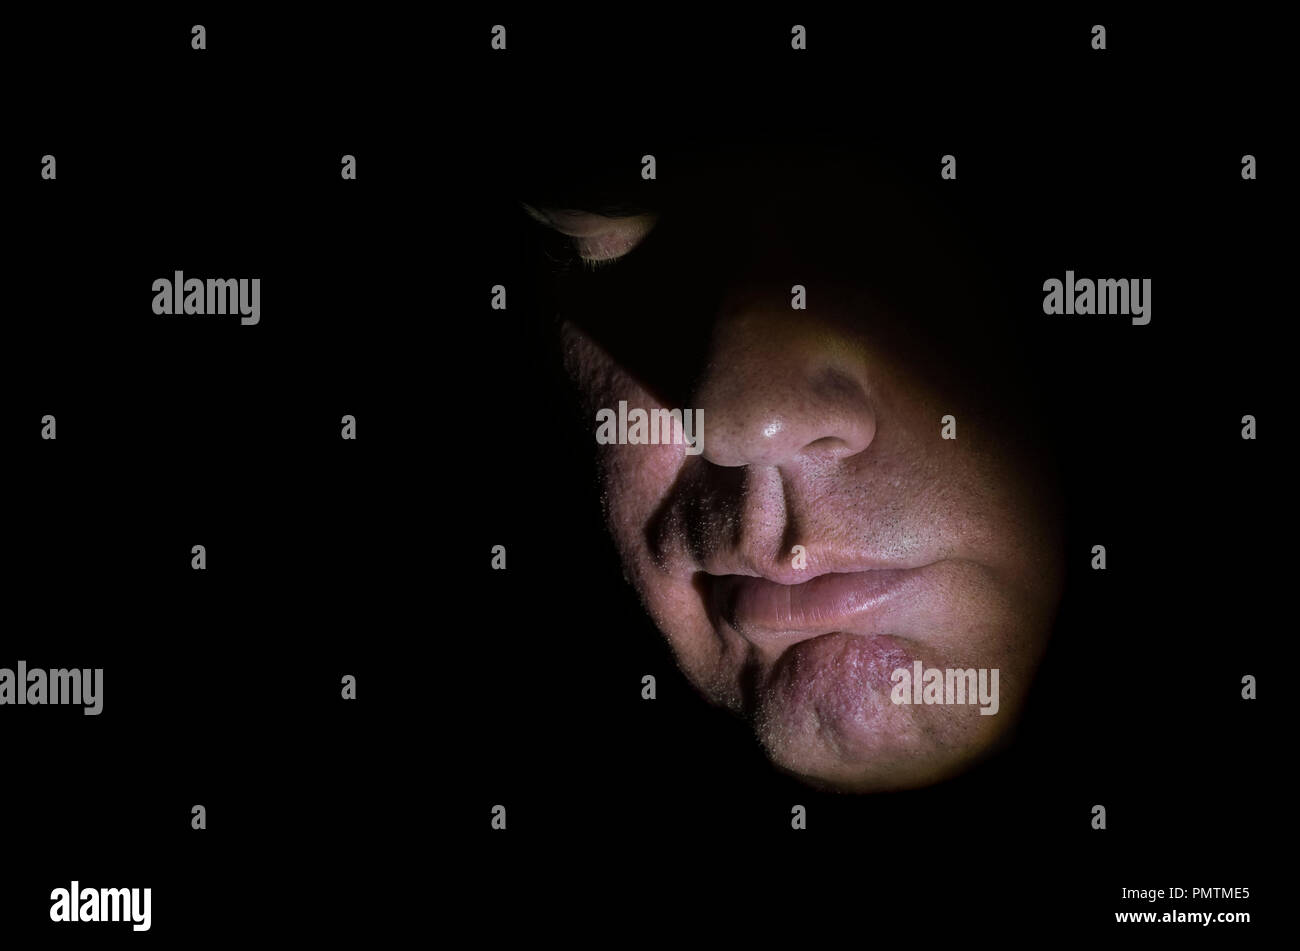 Modello rilasciato closeup immagine di mezza età Caucasian il volto dell'uomo, parzialmente illuminata con illuminazione moody & gli occhi chiusi, che mostra per naso e bocca, guardando verso il basso. Foto Stock